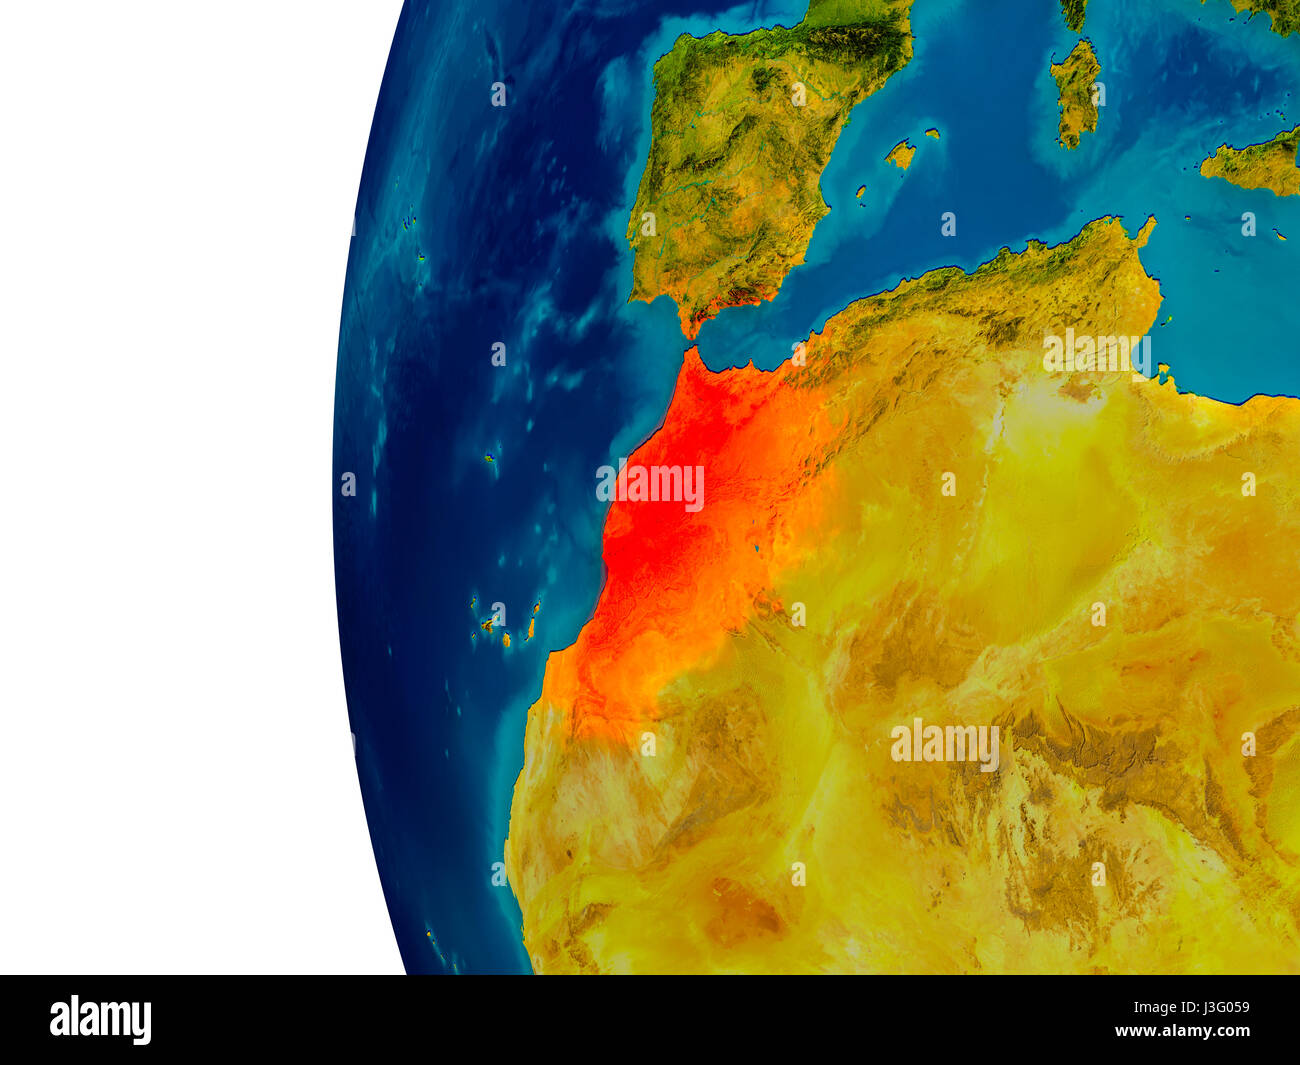 Le Maroc a souligné en rouge sur le modèle détaillé de la planète Terre. 3D illustration. Éléments de cette image fournie par la NASA. Banque D'Images